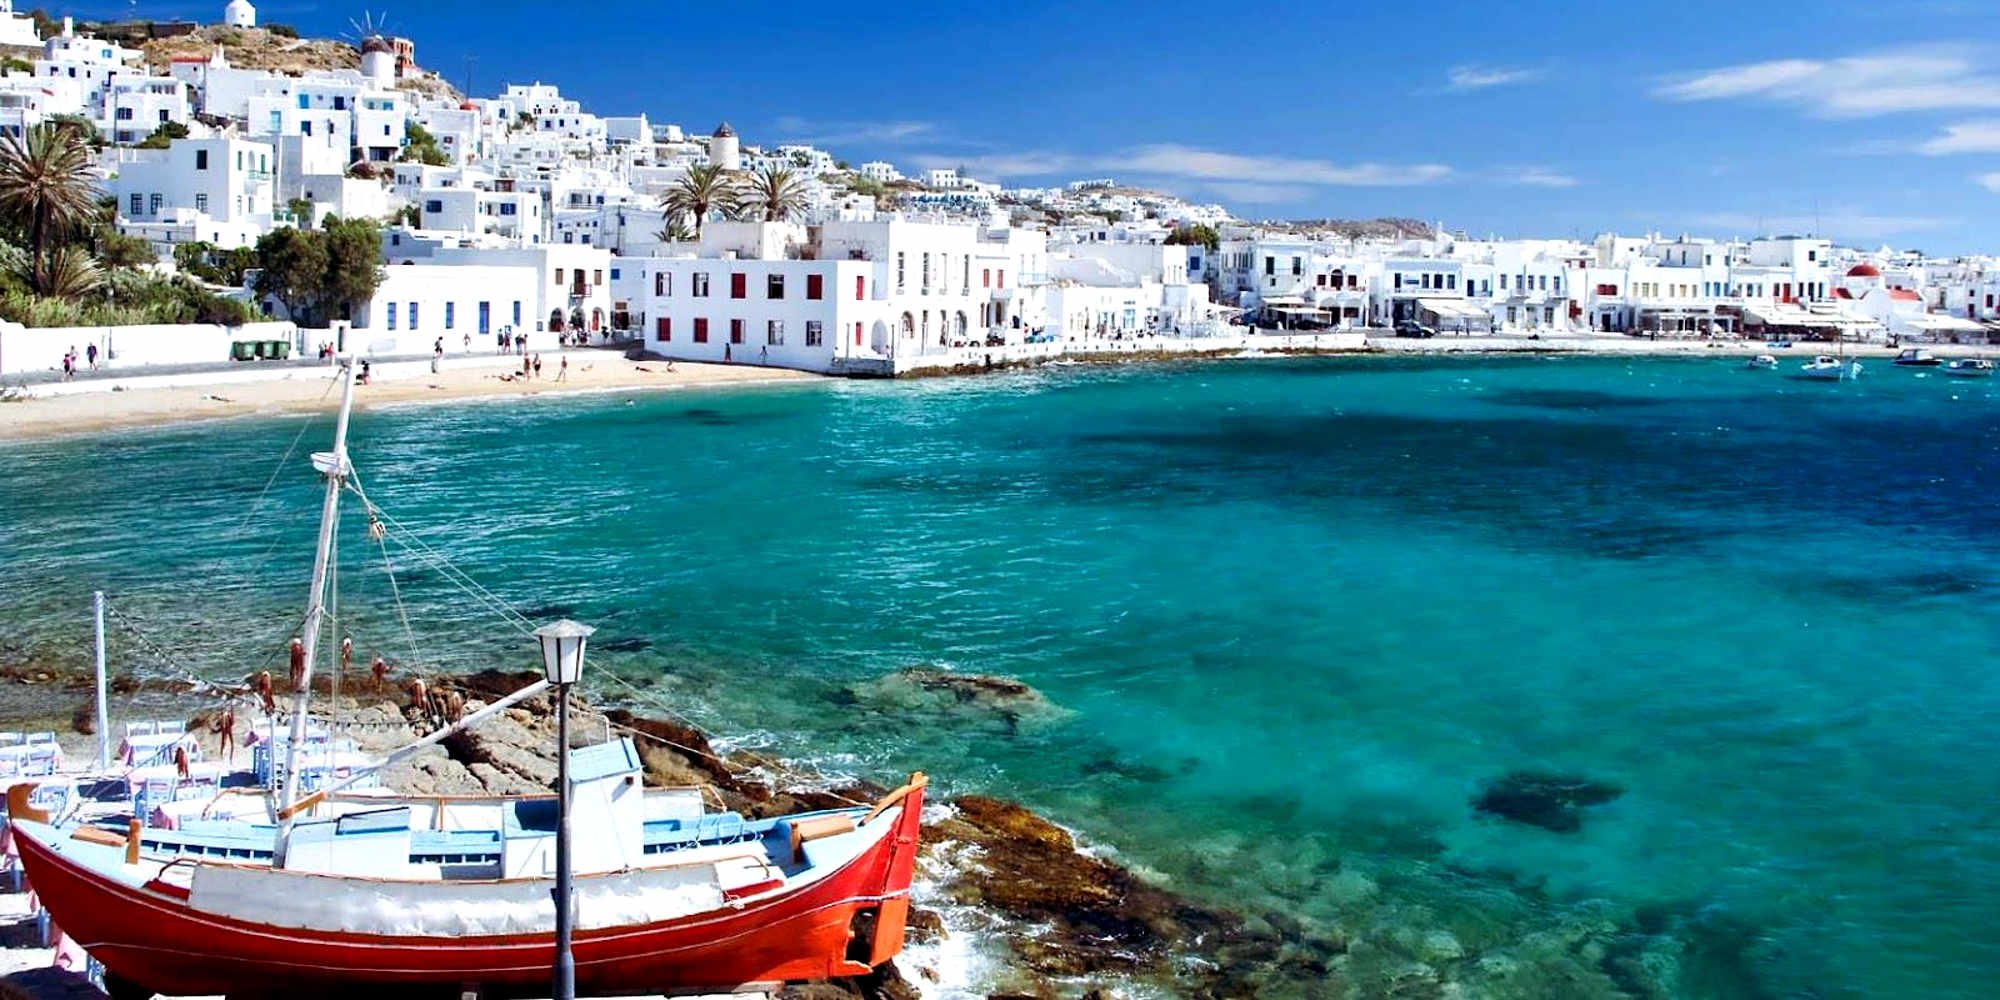 Σοκ για την κυβέρνηση Μητσοτάκη από τους Βρετανούς: Εκτός «πράσινης» λίστας τα ελληνικά νησιά! -Χτύπημα για τον τουρισμό